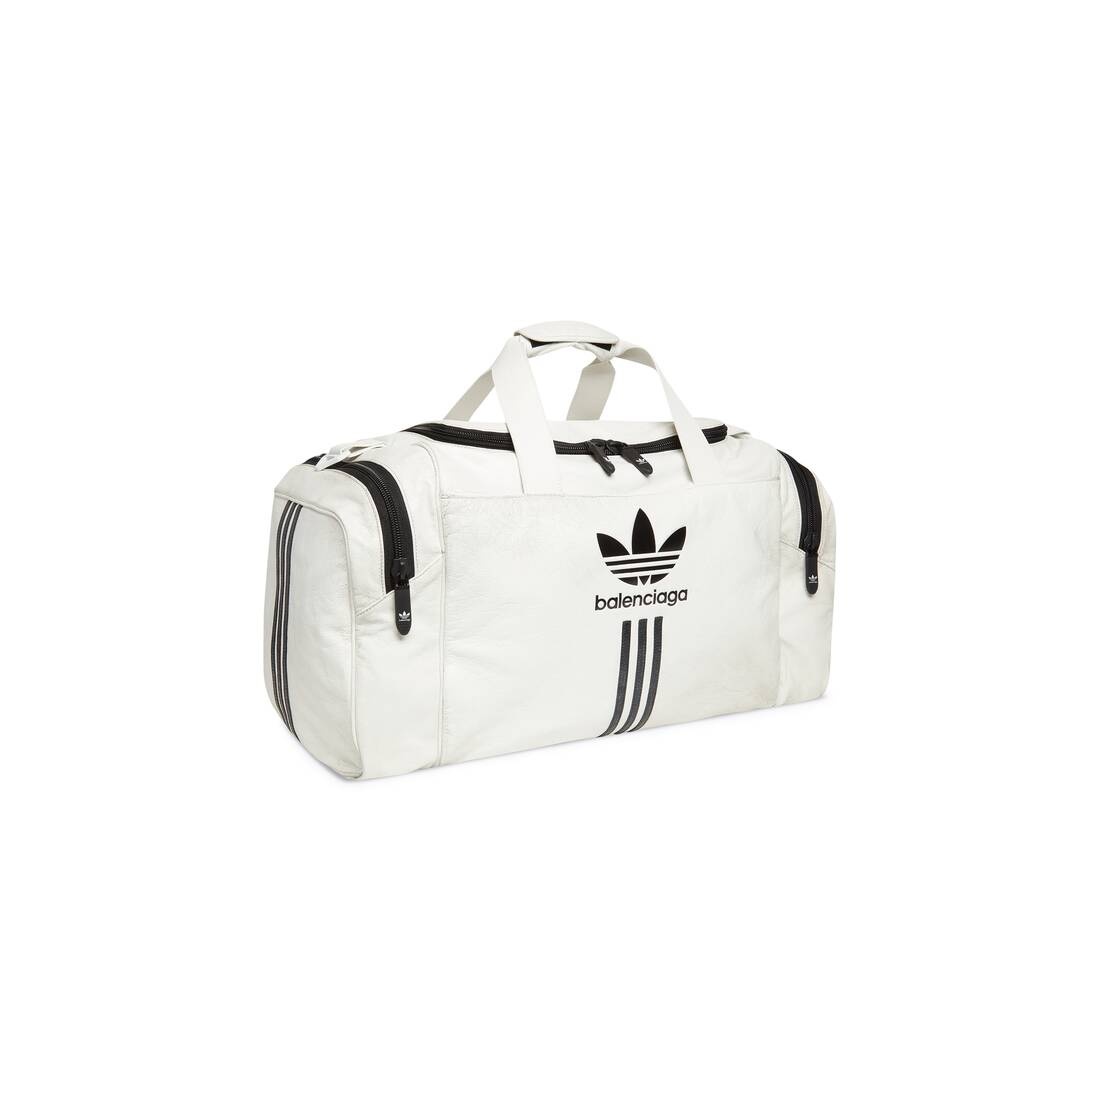 Men's Balenciaga / Adidas Gym Bag  in White - 2